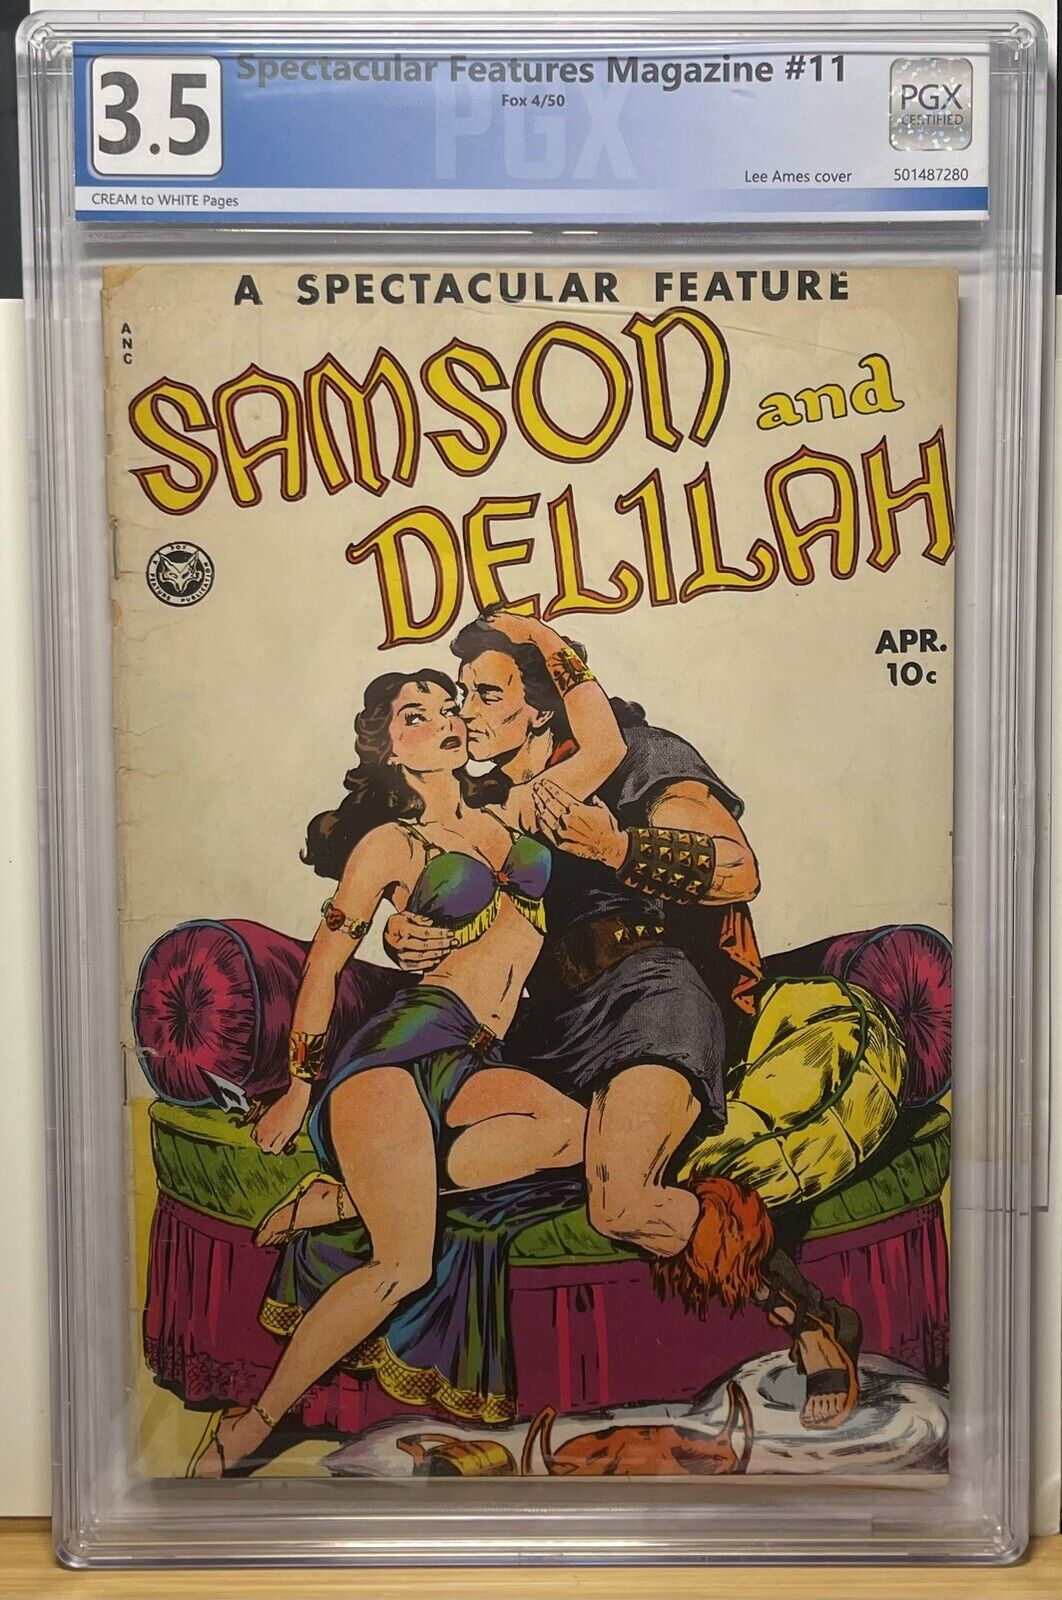 Spectacular Features 11 Samson And Delilah PGX not CGC GGA Comic 1950